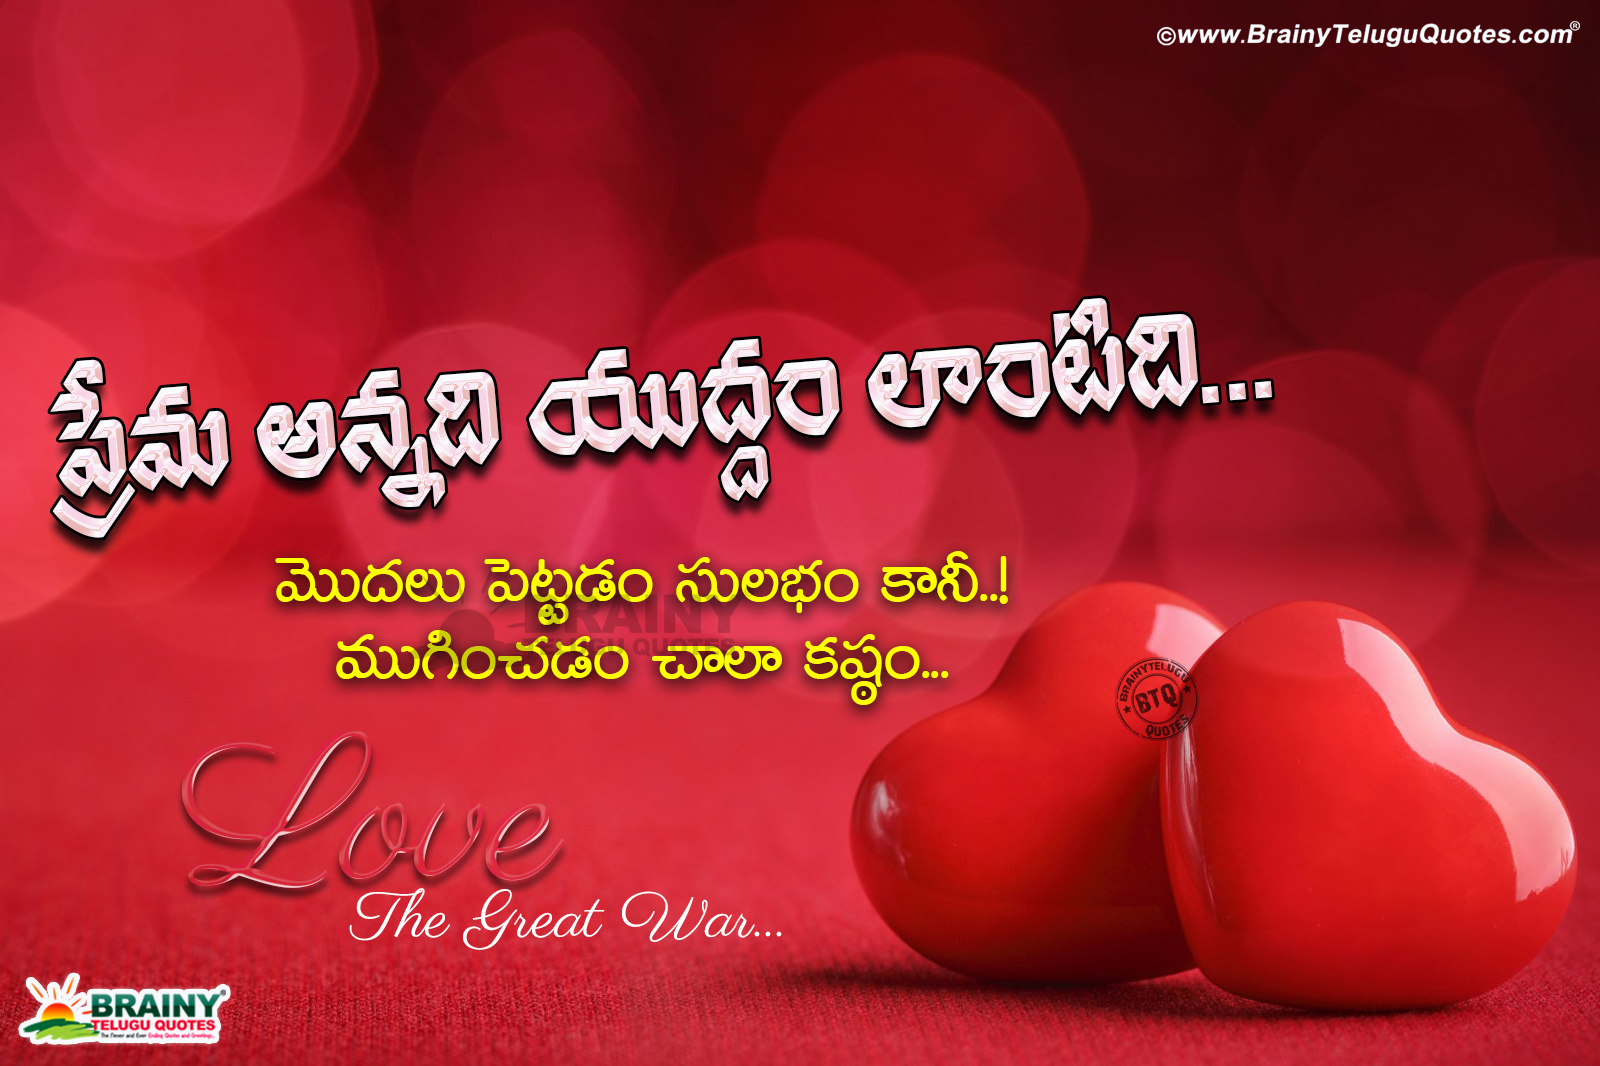 Meaning Of Love In Telugu Love Is Like A War Telugu Love Poetry